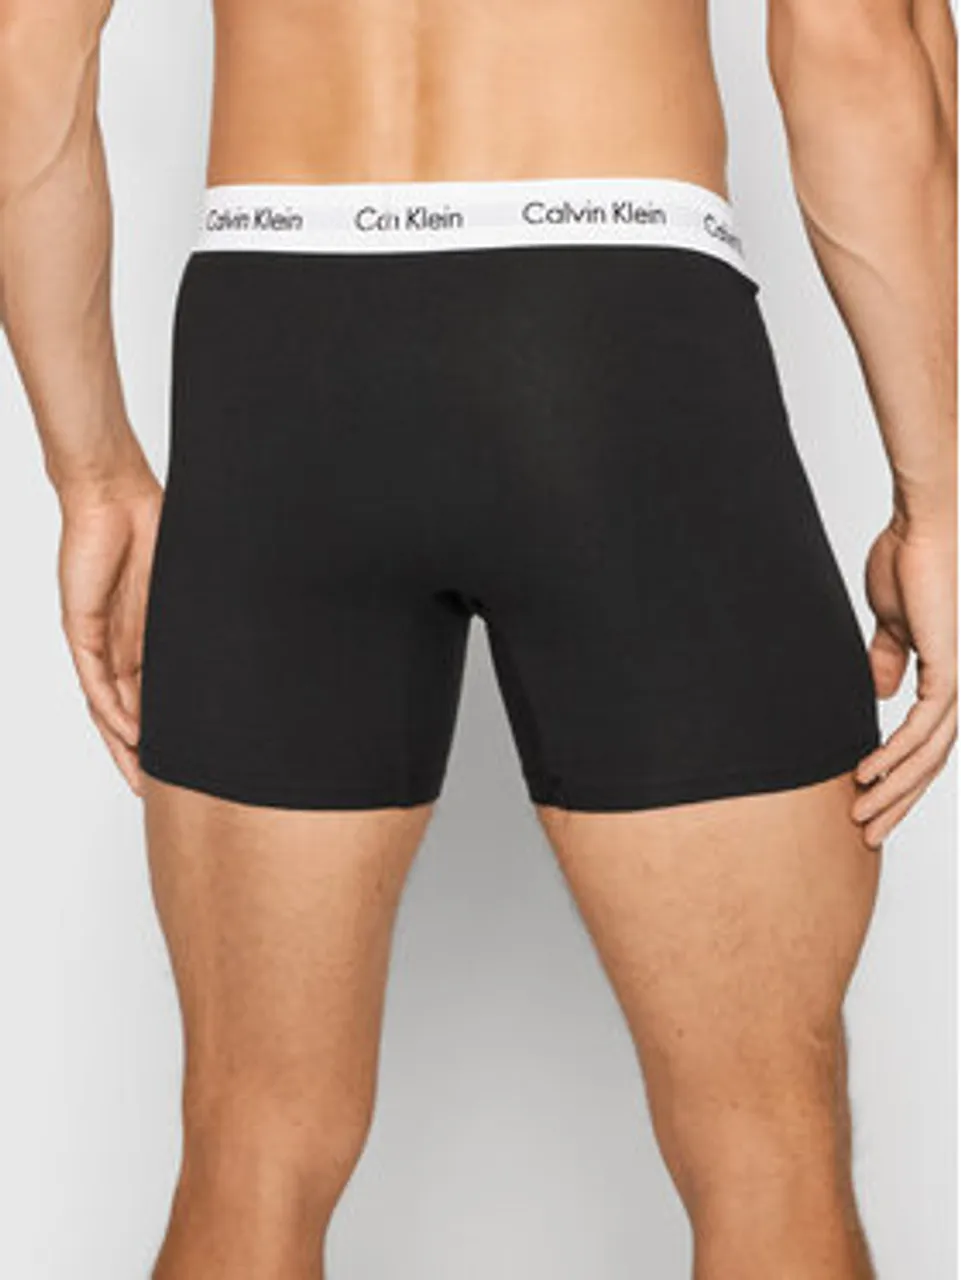 Calvin Klein Underwear 3er-Set Boxershorts 000NB1770A Schwarz